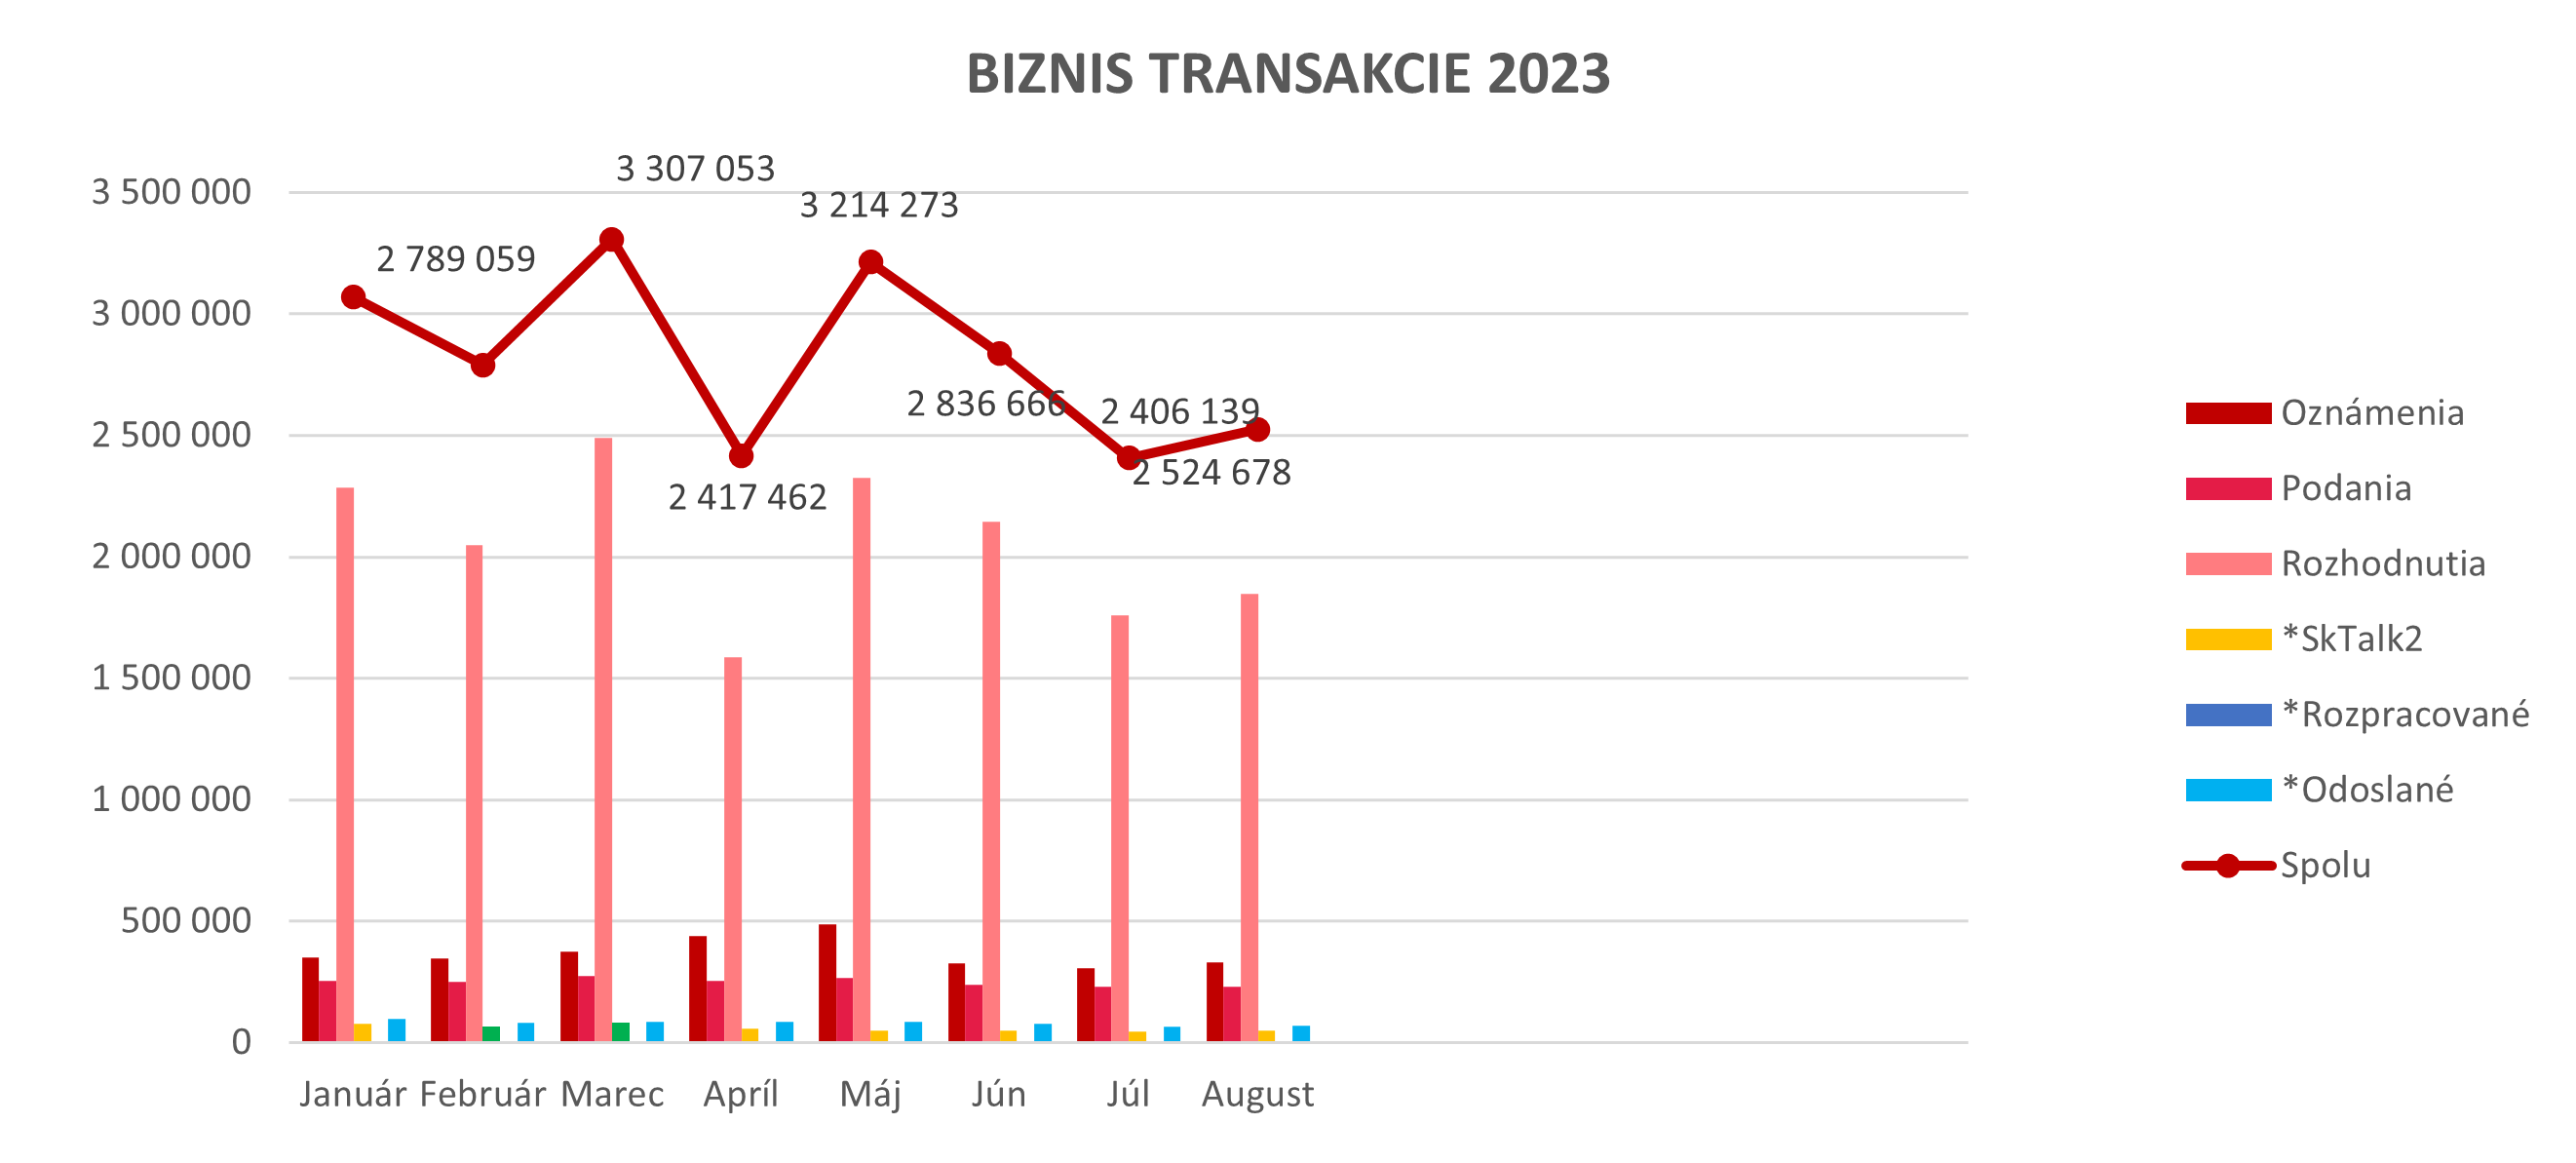 Ilustračný graf biznis transakcií za rok 2023.